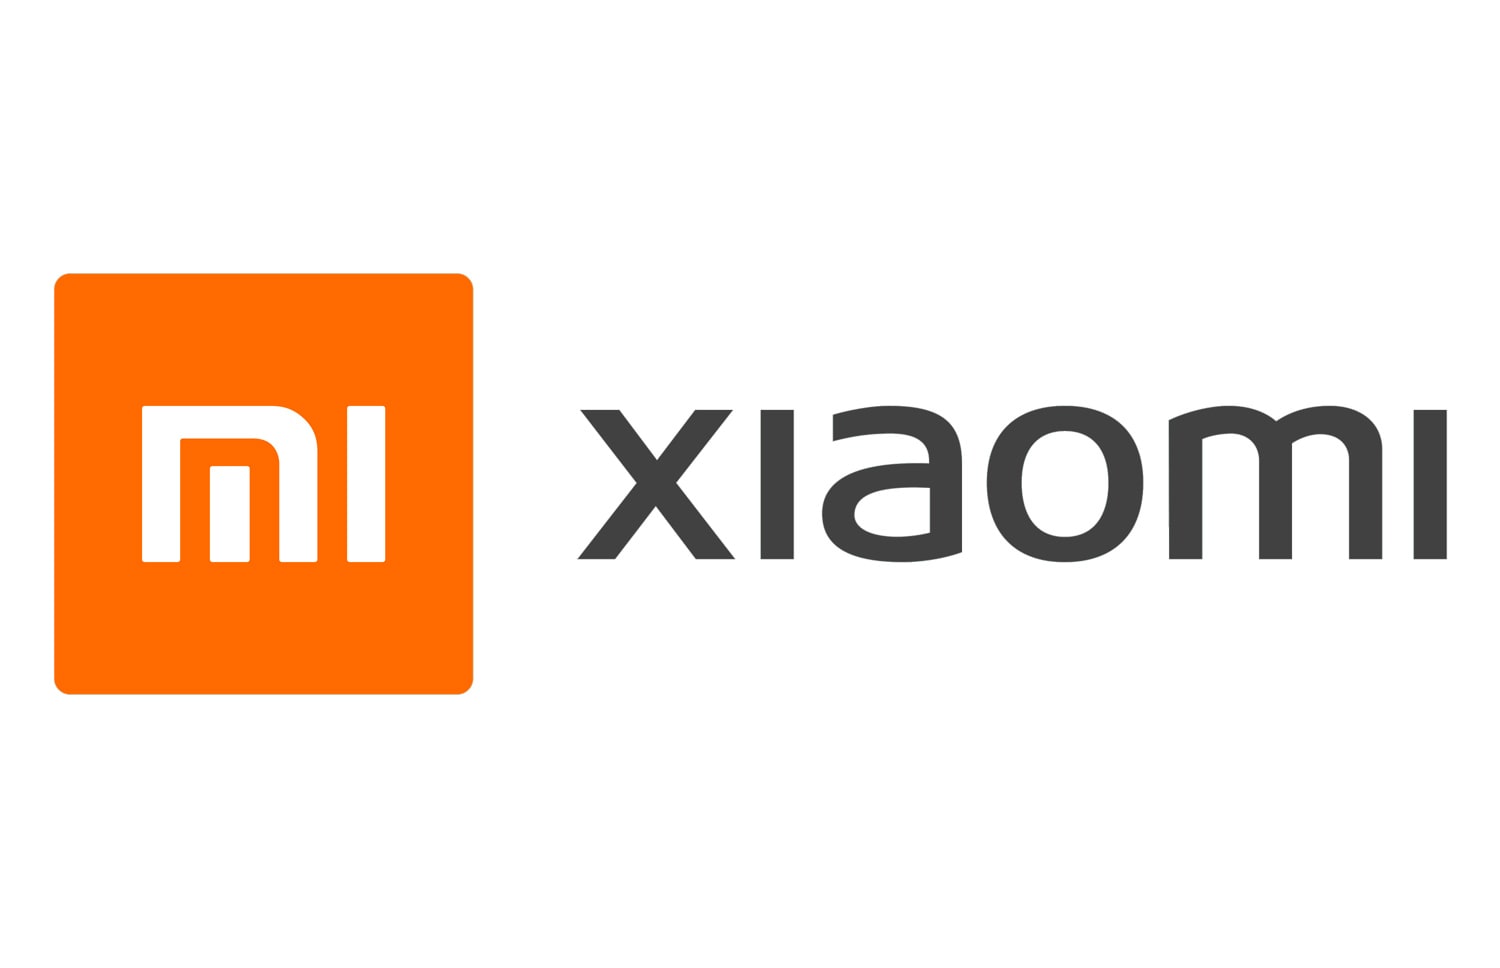 Xiaomi сообщила о стабильном росте доходов и прибыли в третьем квартале 2021 года